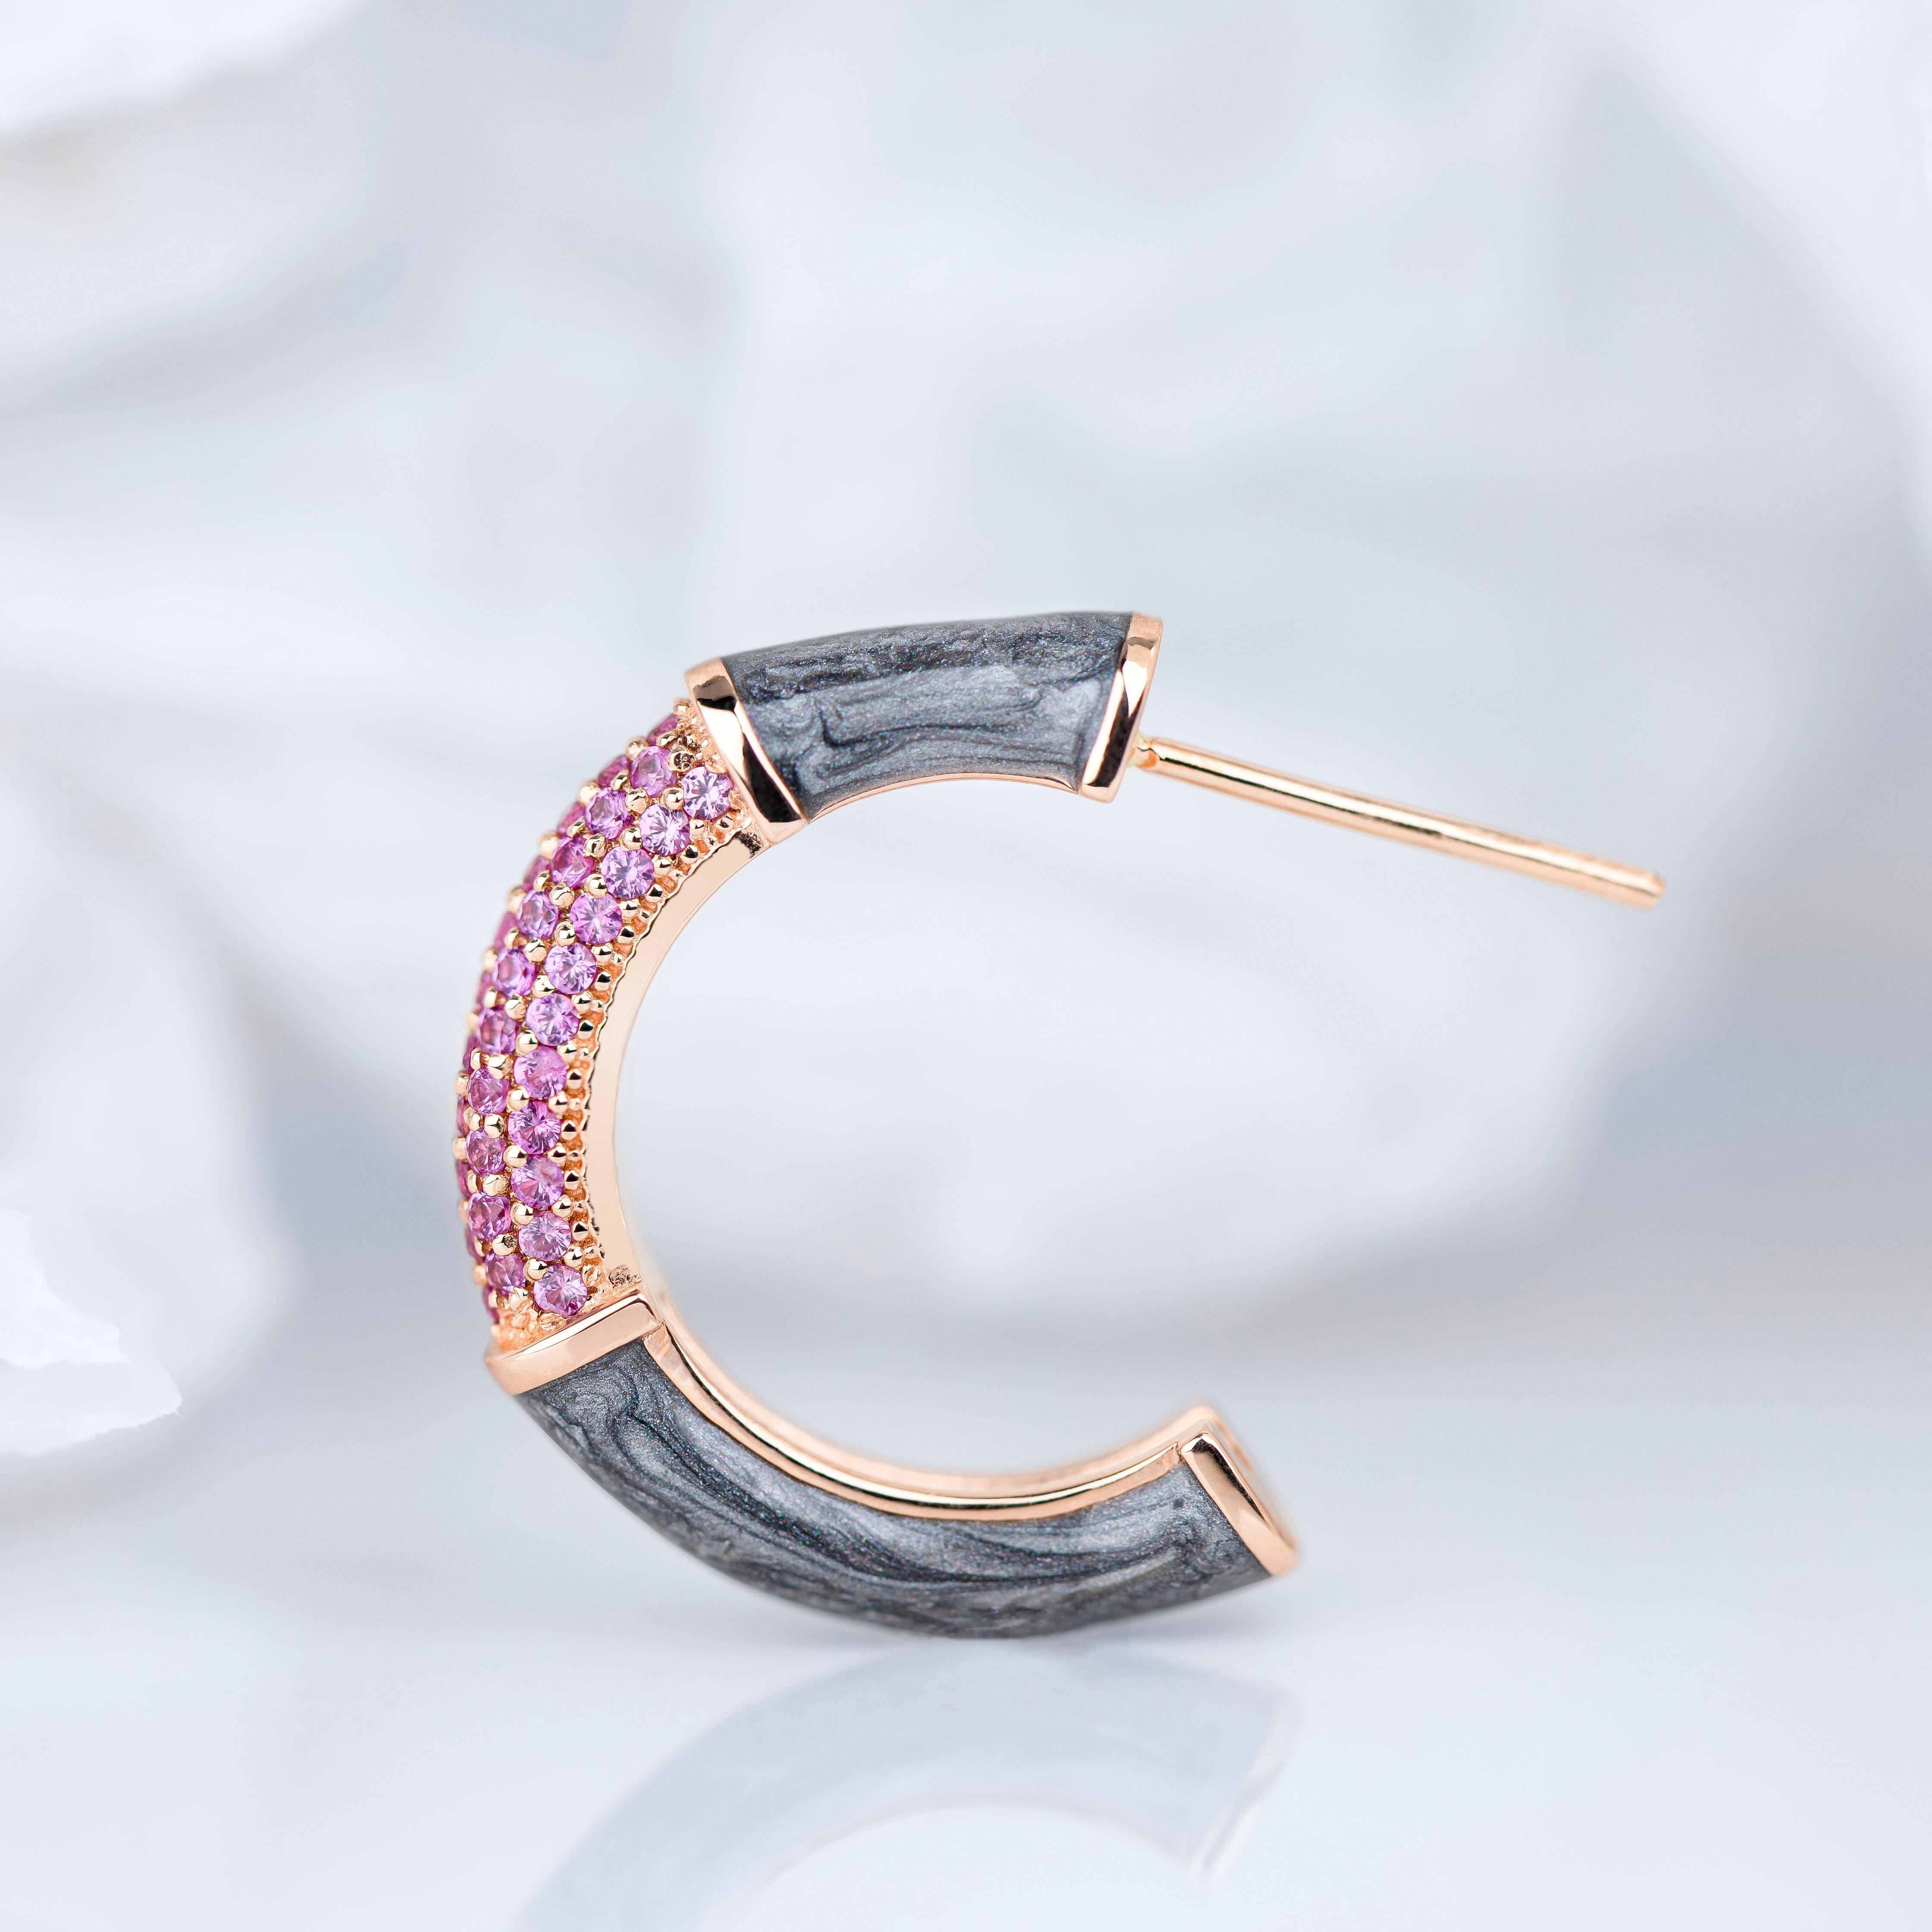 Gold-Ohrring im Art-Déco-Stil mit rosa Saphirstein und Bumble-Farben-Ohrring

Dieser Ring wurde aus hochwertigen MATERIALEN und in hervorragender Handarbeit hergestellt. Ich garantiere für die Qualitätssicherung meiner Handarbeit und meiner